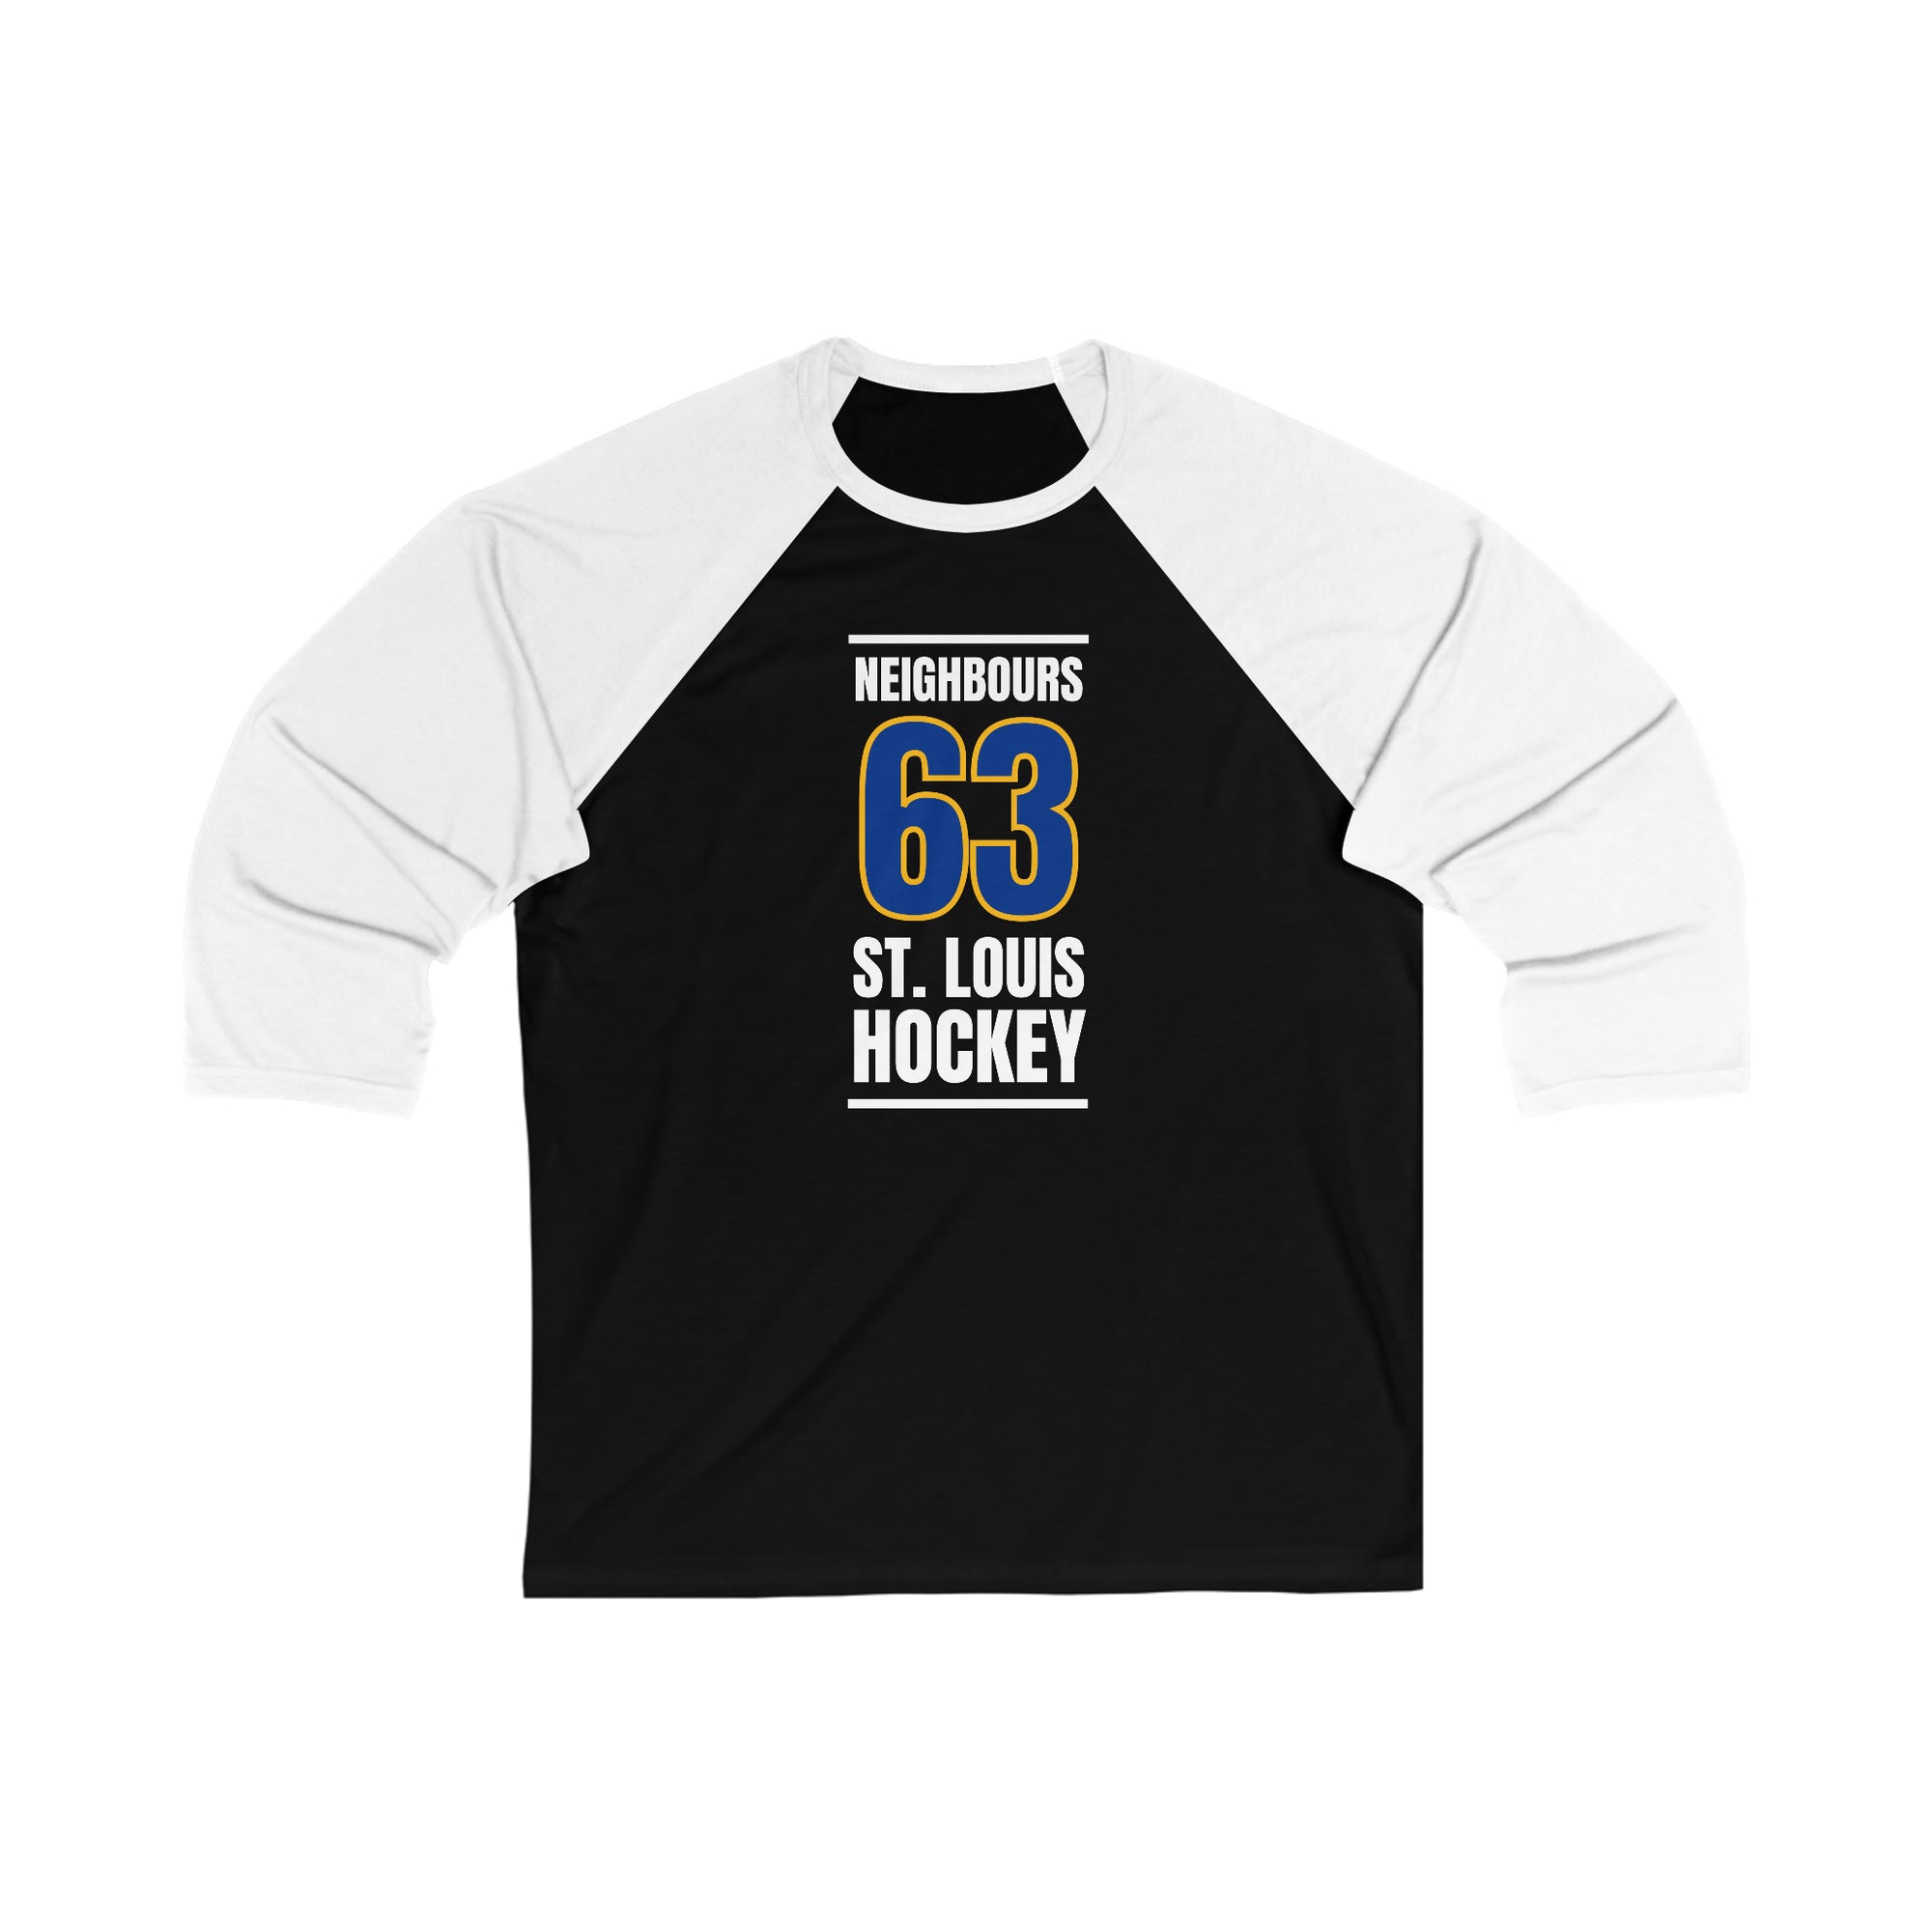 Neighbours 63 St. Louis Hockey Blue Vertical Design Unisex Tri-Blend 3/4 Sleeve Raglan Baseball Shirt